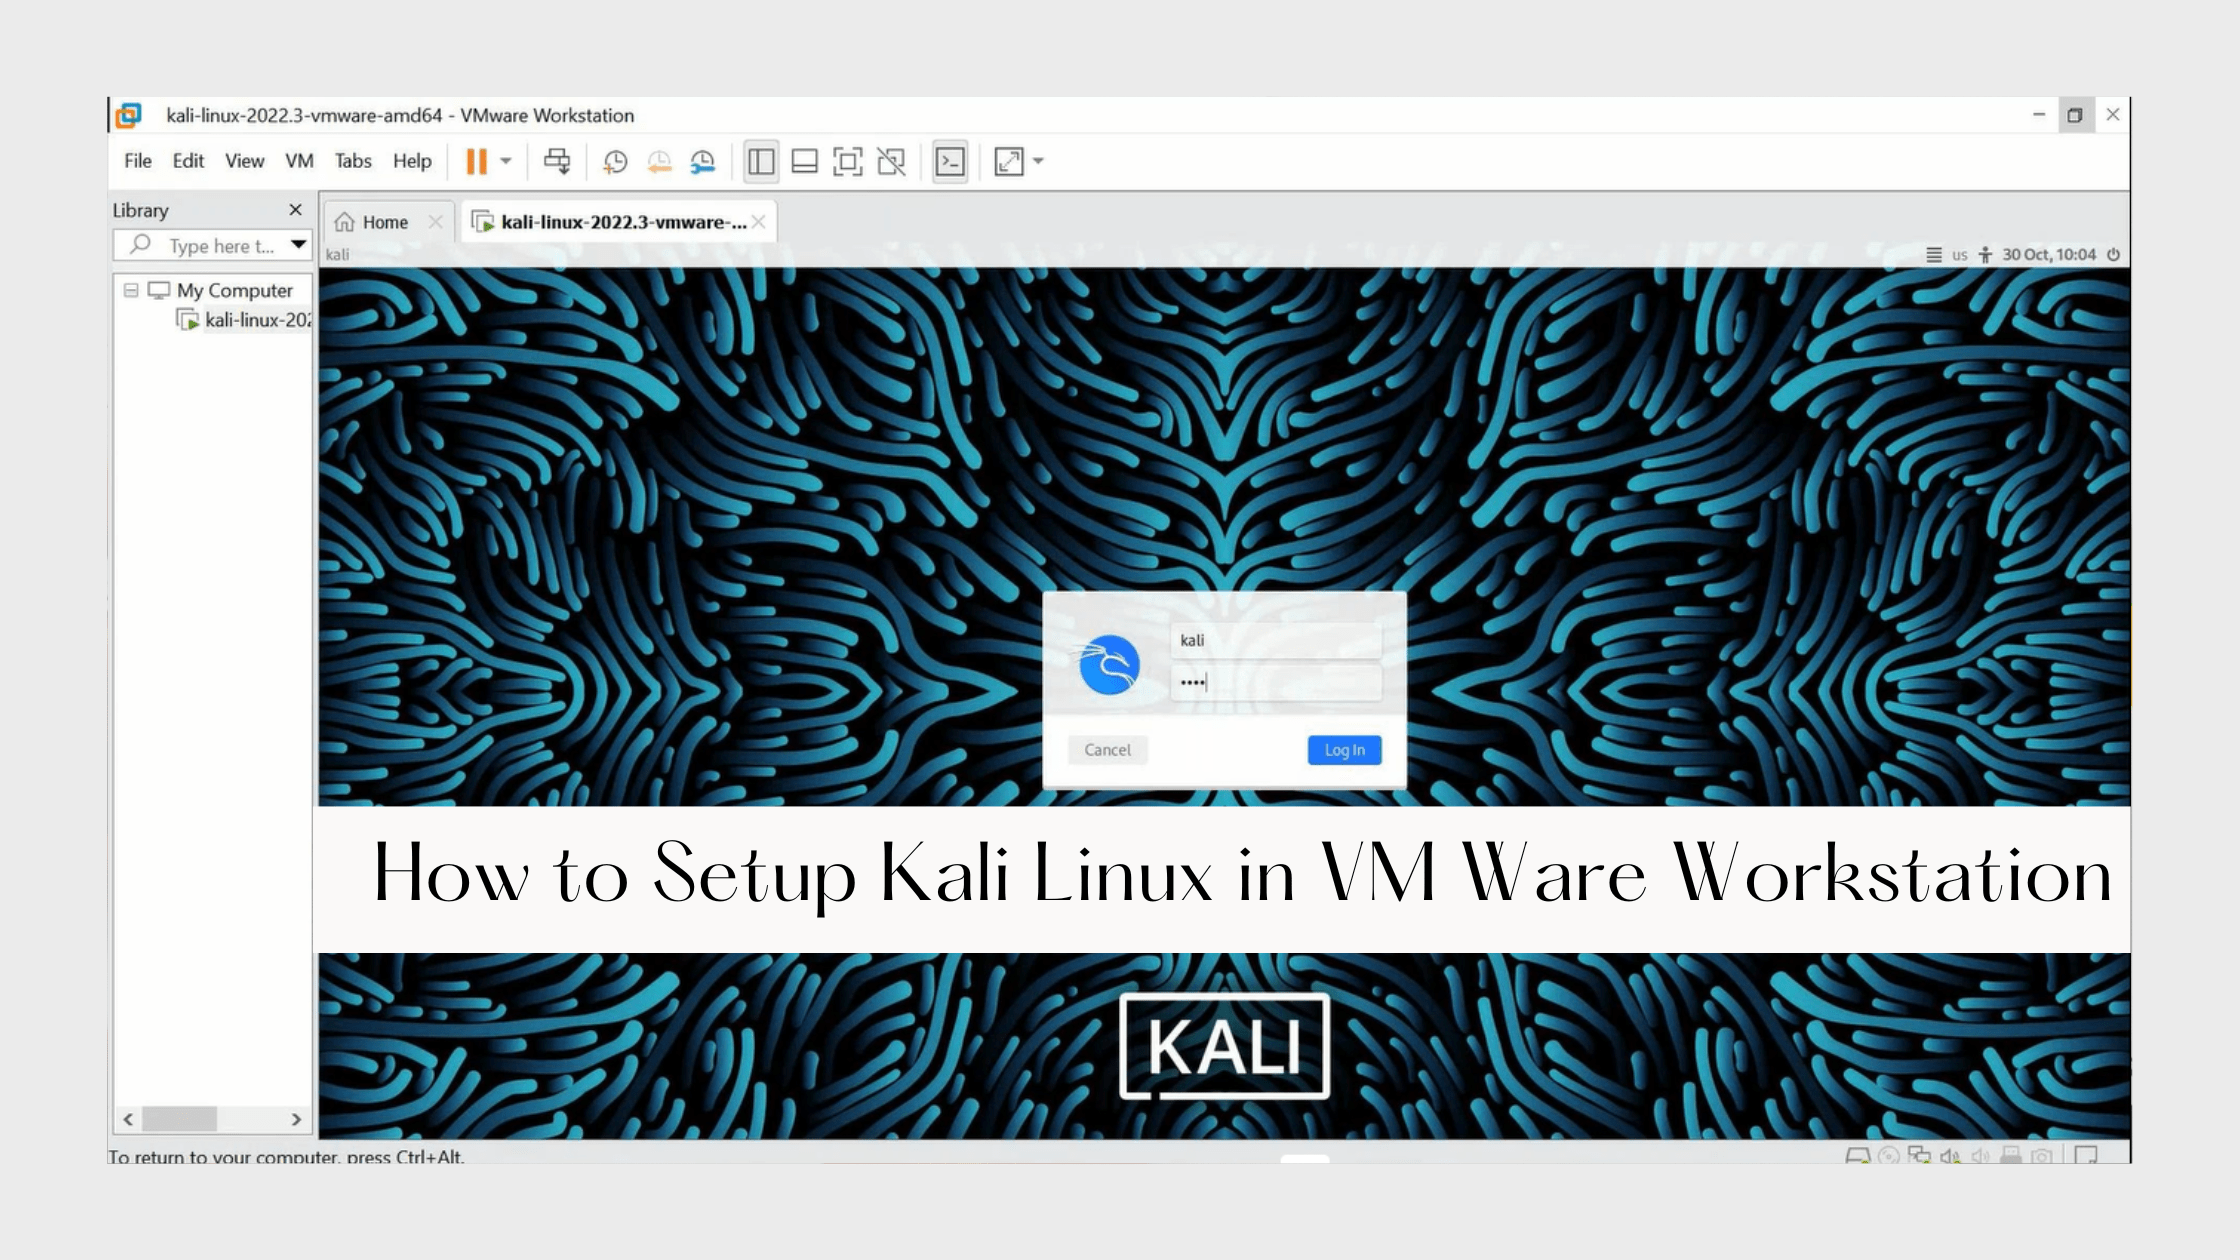 How to Setup Kali Linux in VM Ware Workstation